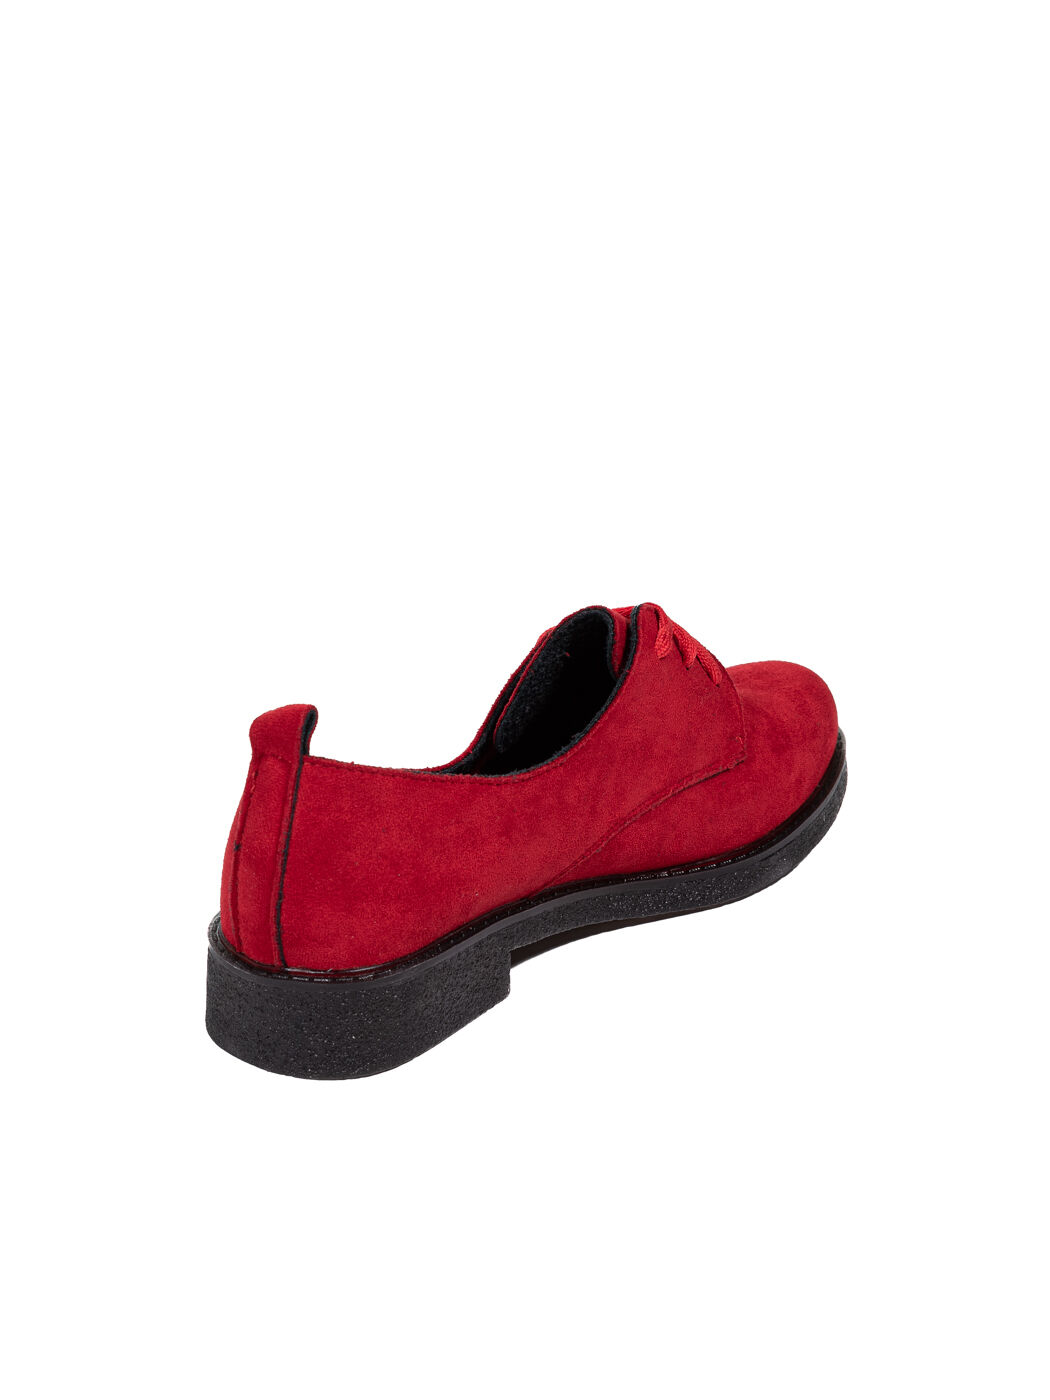 Туфли Oxfords женские красные экозамша каблук устойчивый демисезон 10M вид 2